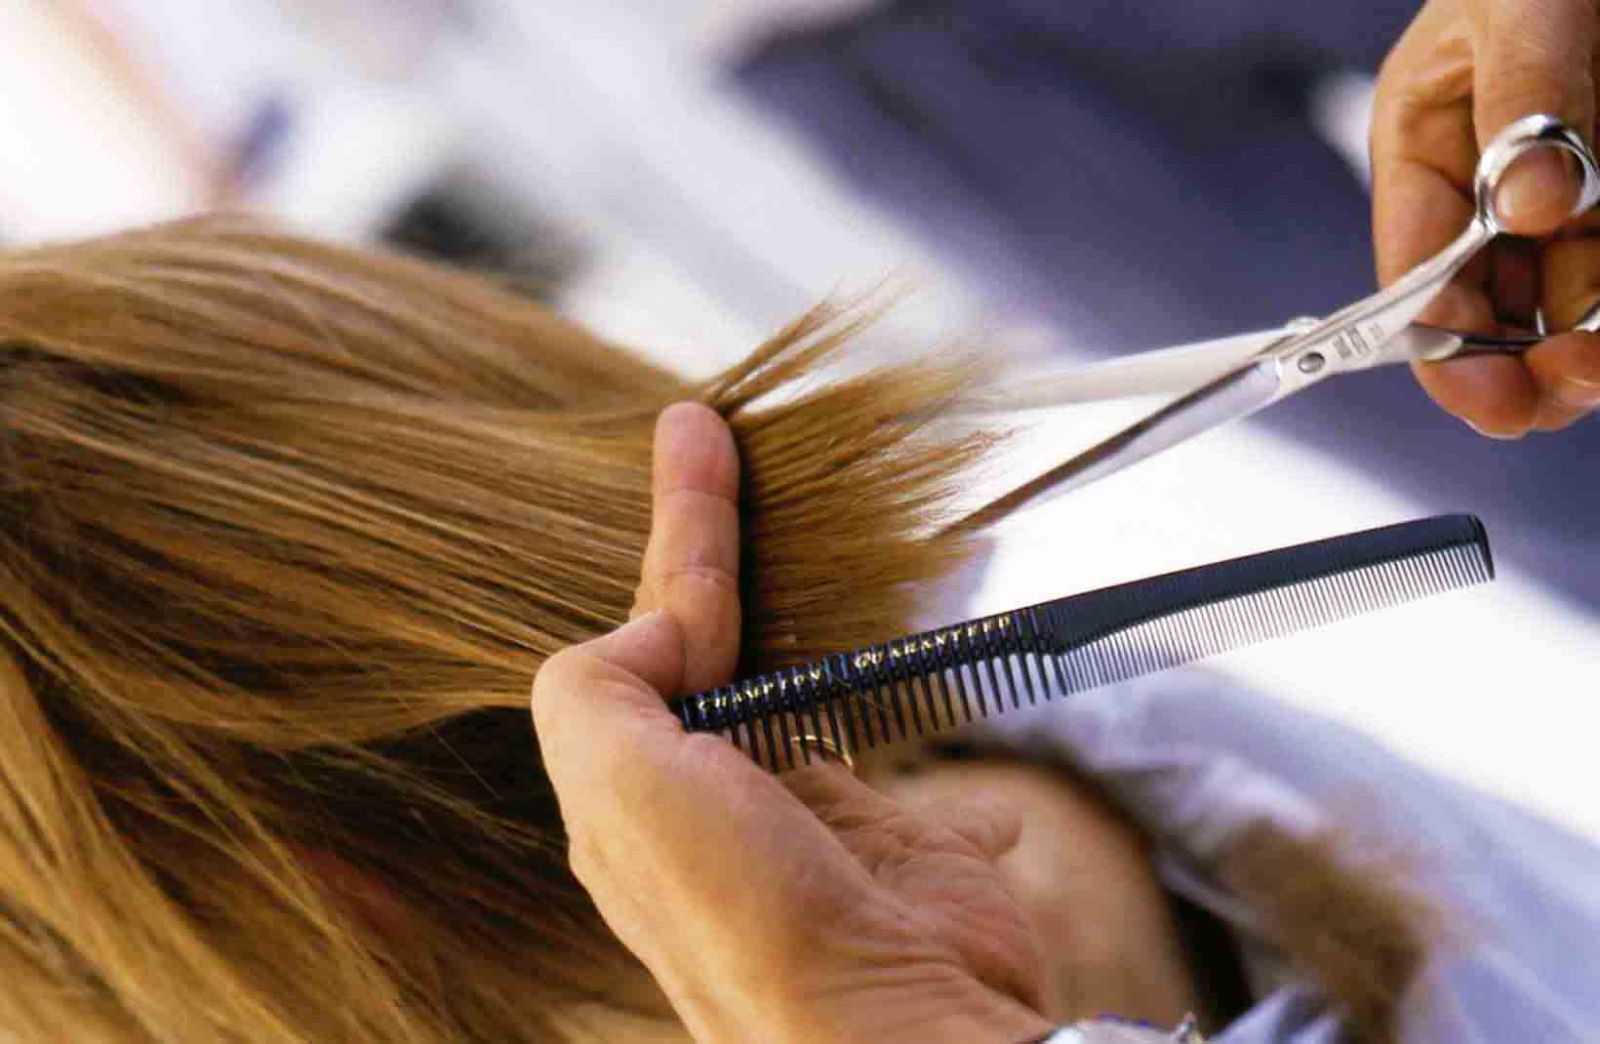 7 bí quyết siêu hiệu quả giúp tóc dài, bóng mượt như bôi dầu